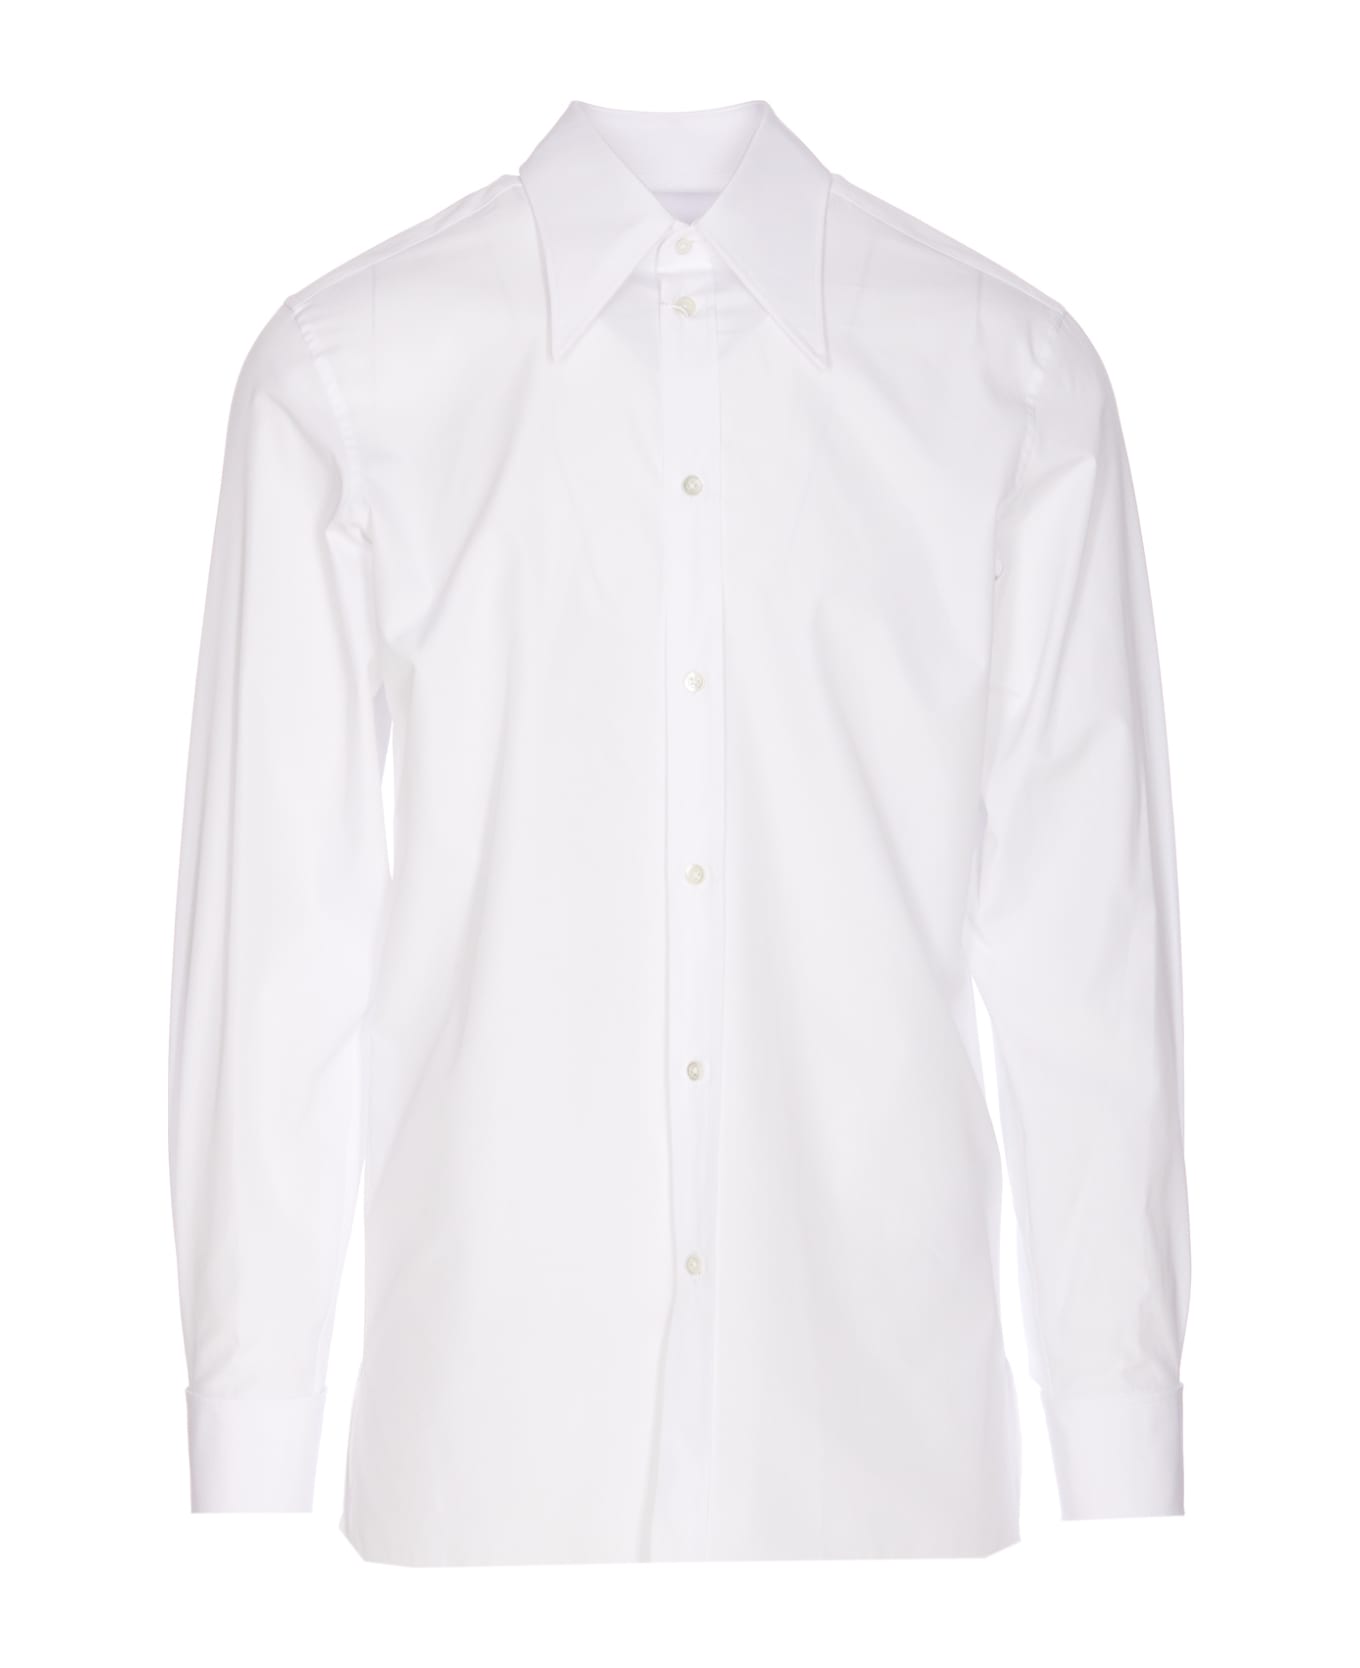 Maison Margiela Shirt - White シャツ